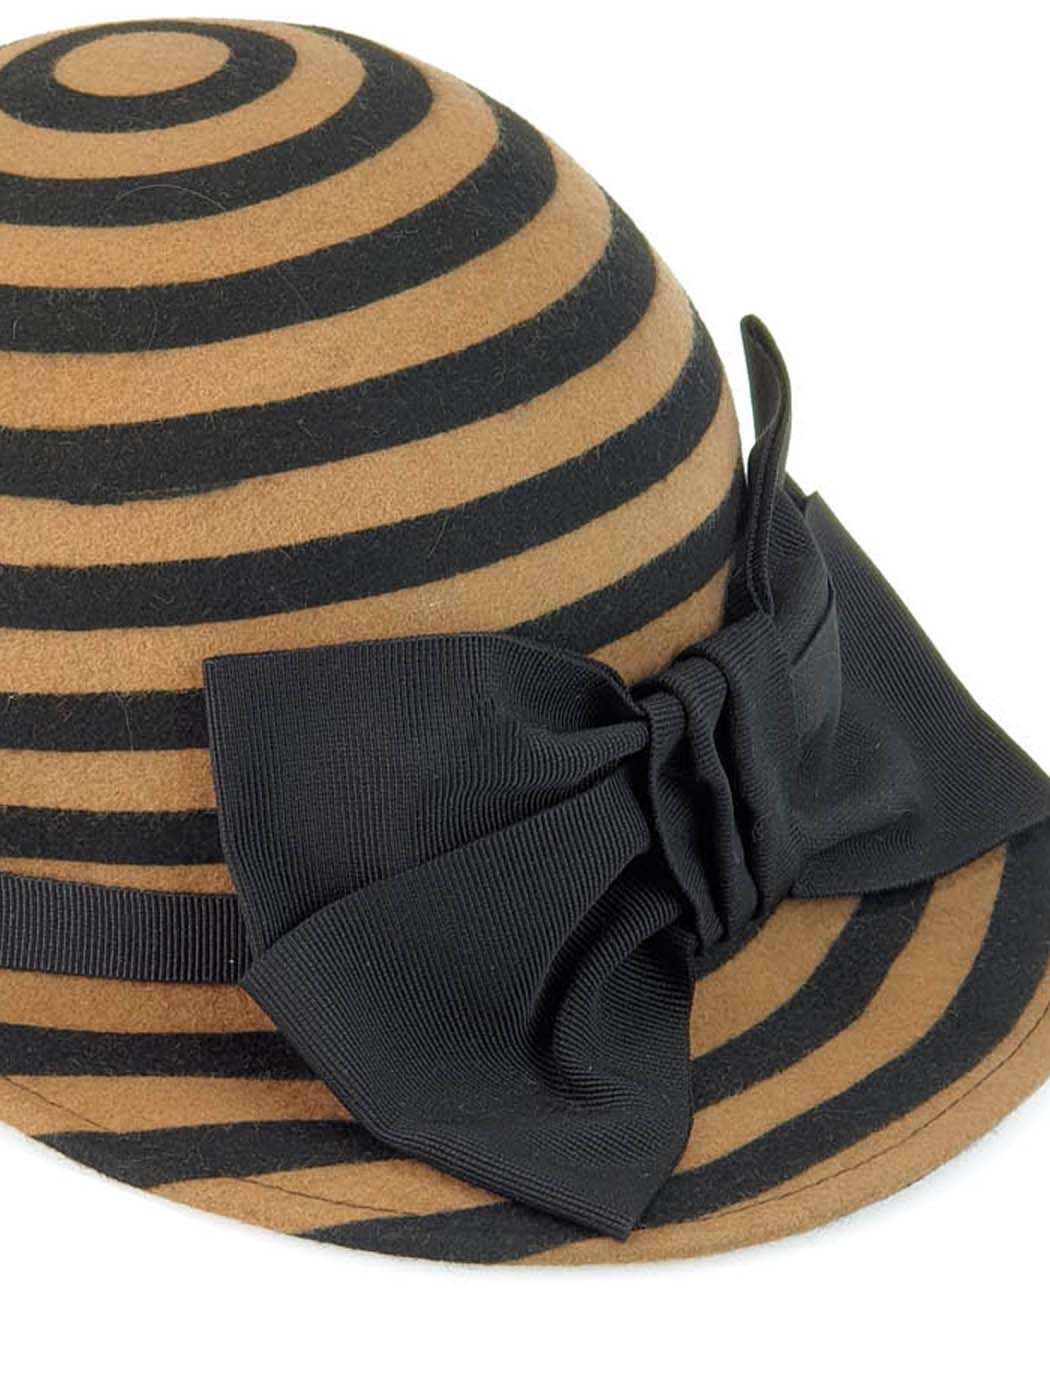 Μάλλινο καπέλο τζόκευ με ρίγες για κορίτσια - W339